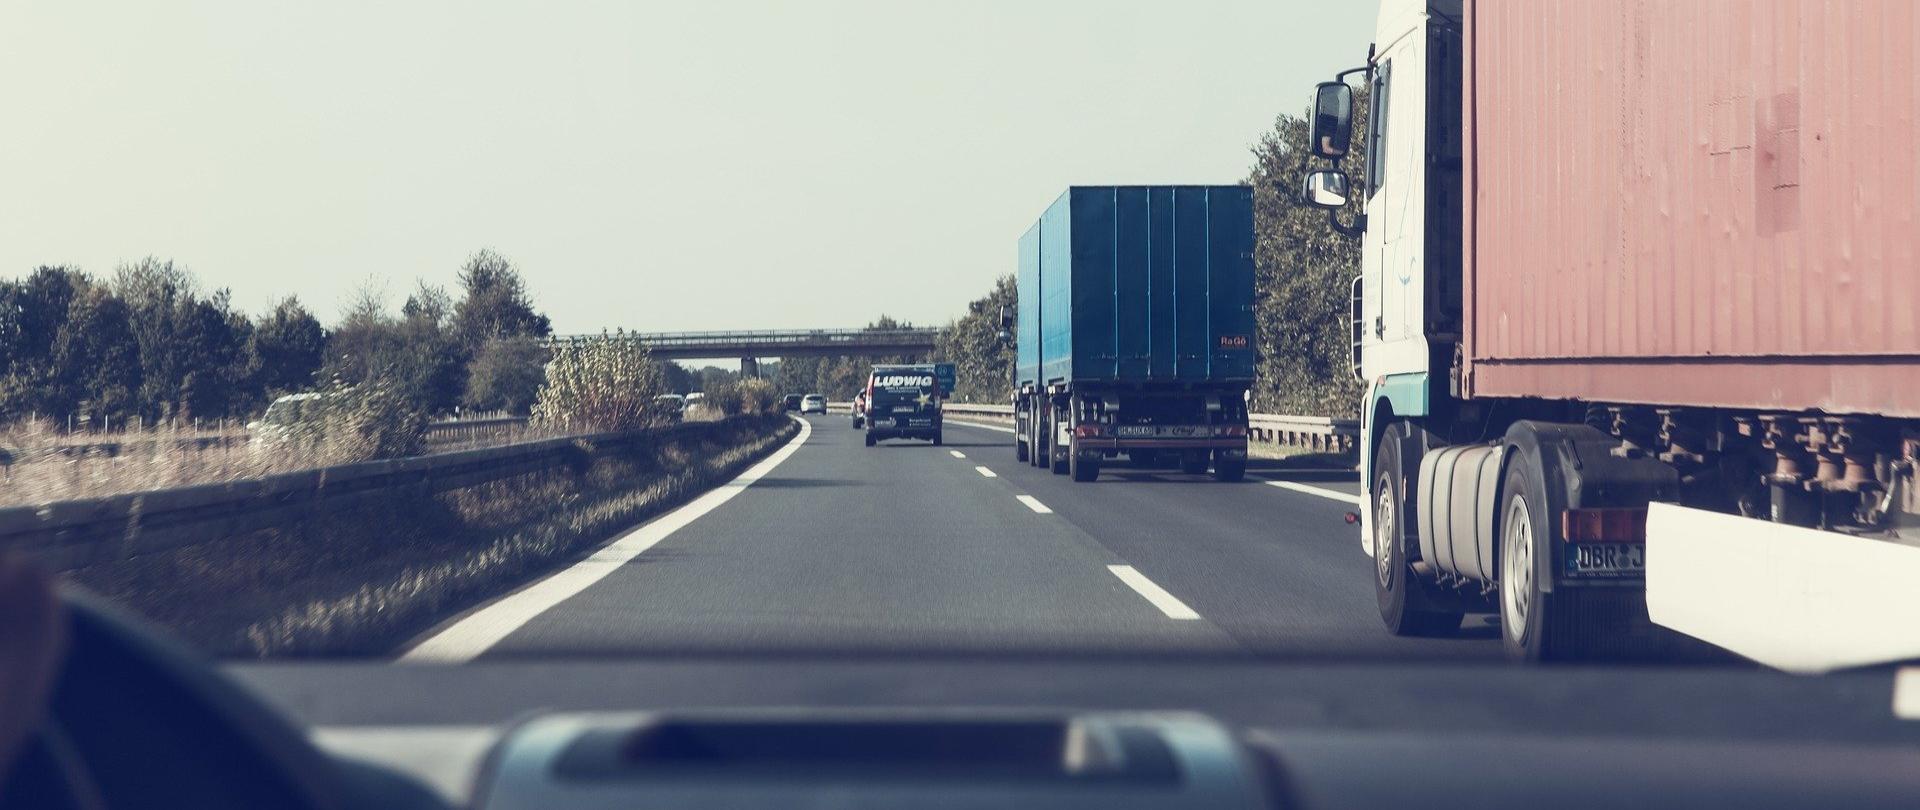 Zdjęcie przedstawia samochody jadące po drodze szybkiego ruchu. Na prawym pasie jadą dwa ciężarowe pojazdy. Na lewym, na dalszym planie, samochód osobowy. Zdjęcie wykonane z perspektywy osoby prowadzącej samochód.